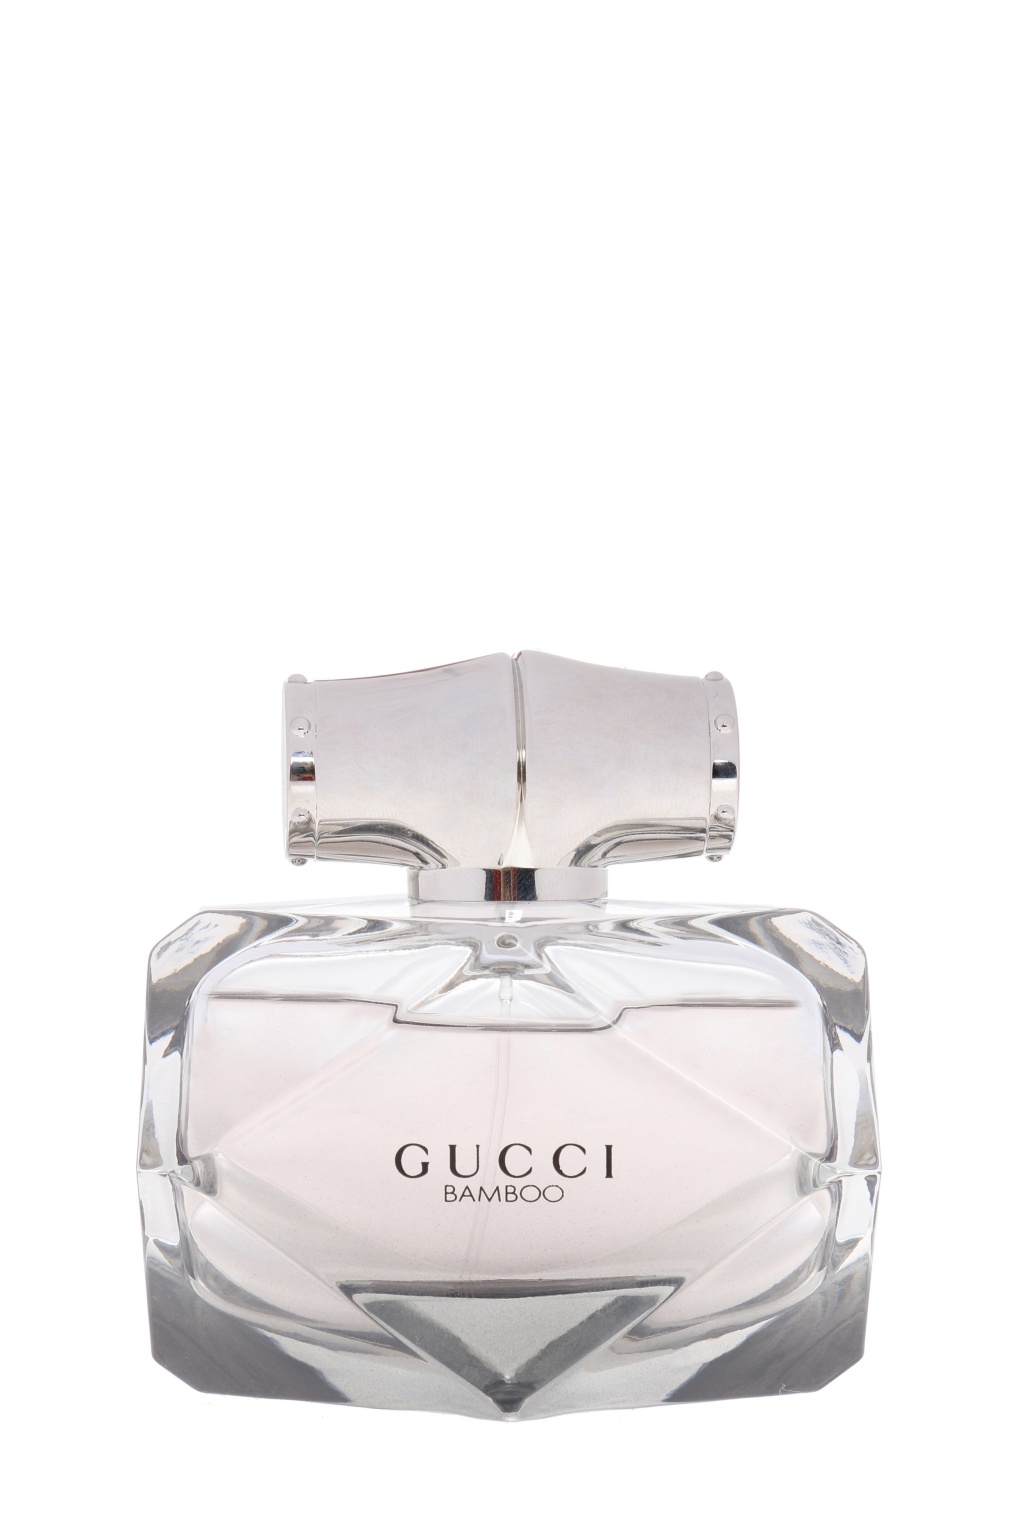 Bamboo' perfume 50 ML Gucci - Vitkac HK